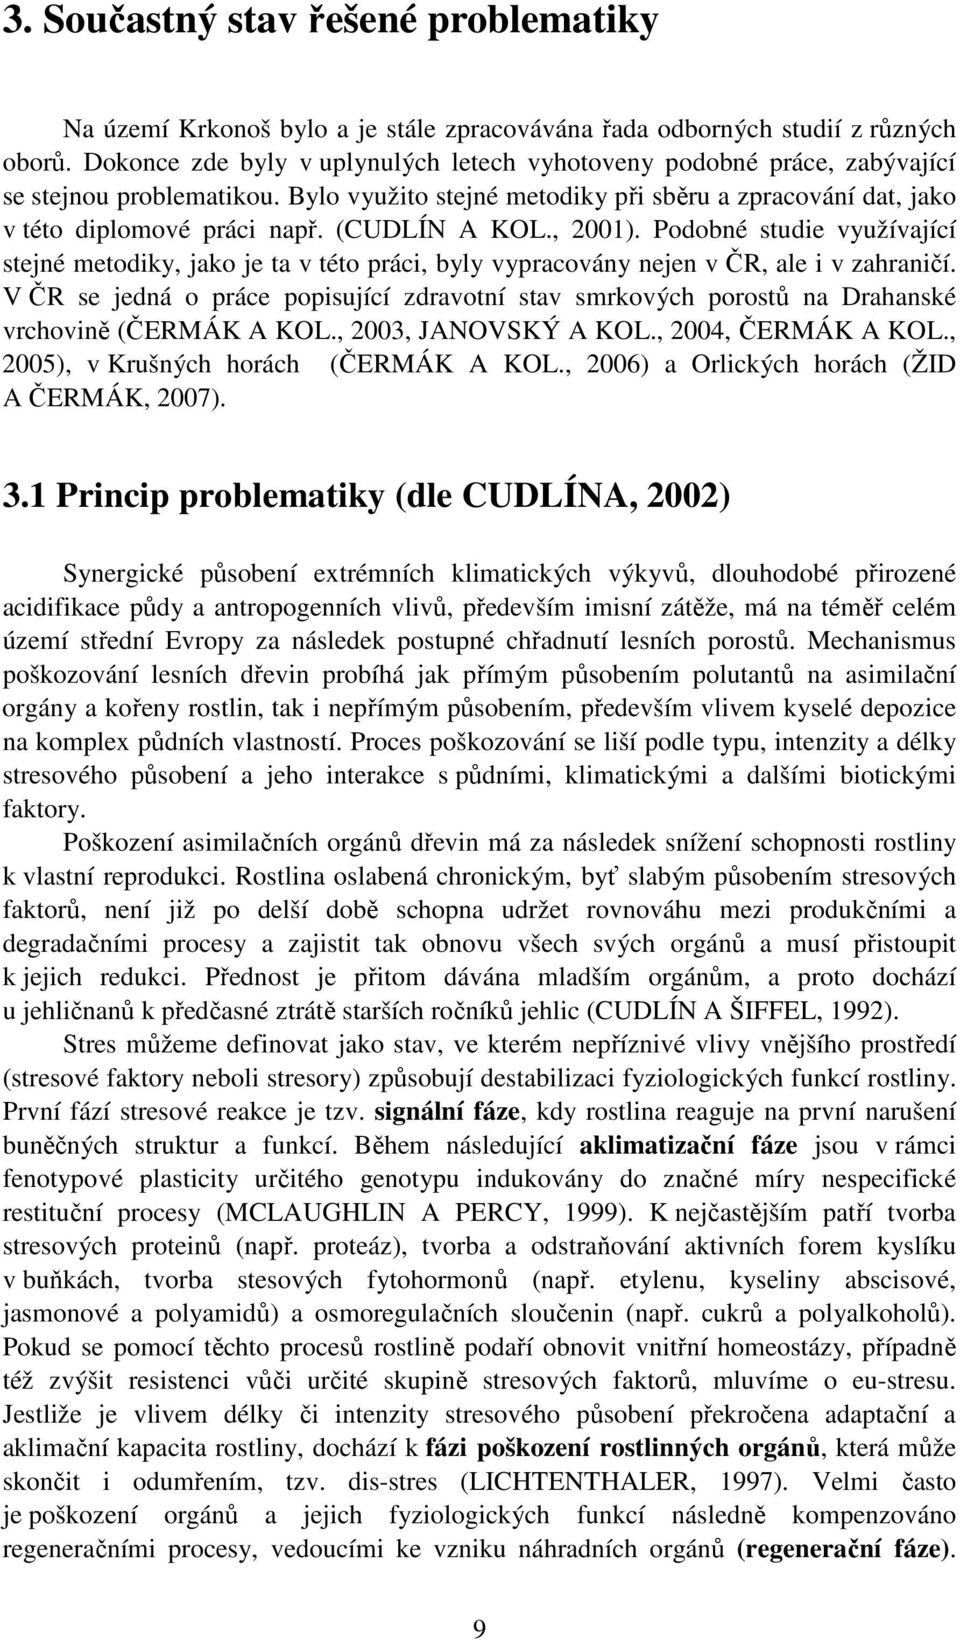 (CUDLÍN A KOL., 2001). Podobné studie využívající stejné metodiky, jako je ta v této práci, byly vypracovány nejen v ČR, ale i v zahraničí.